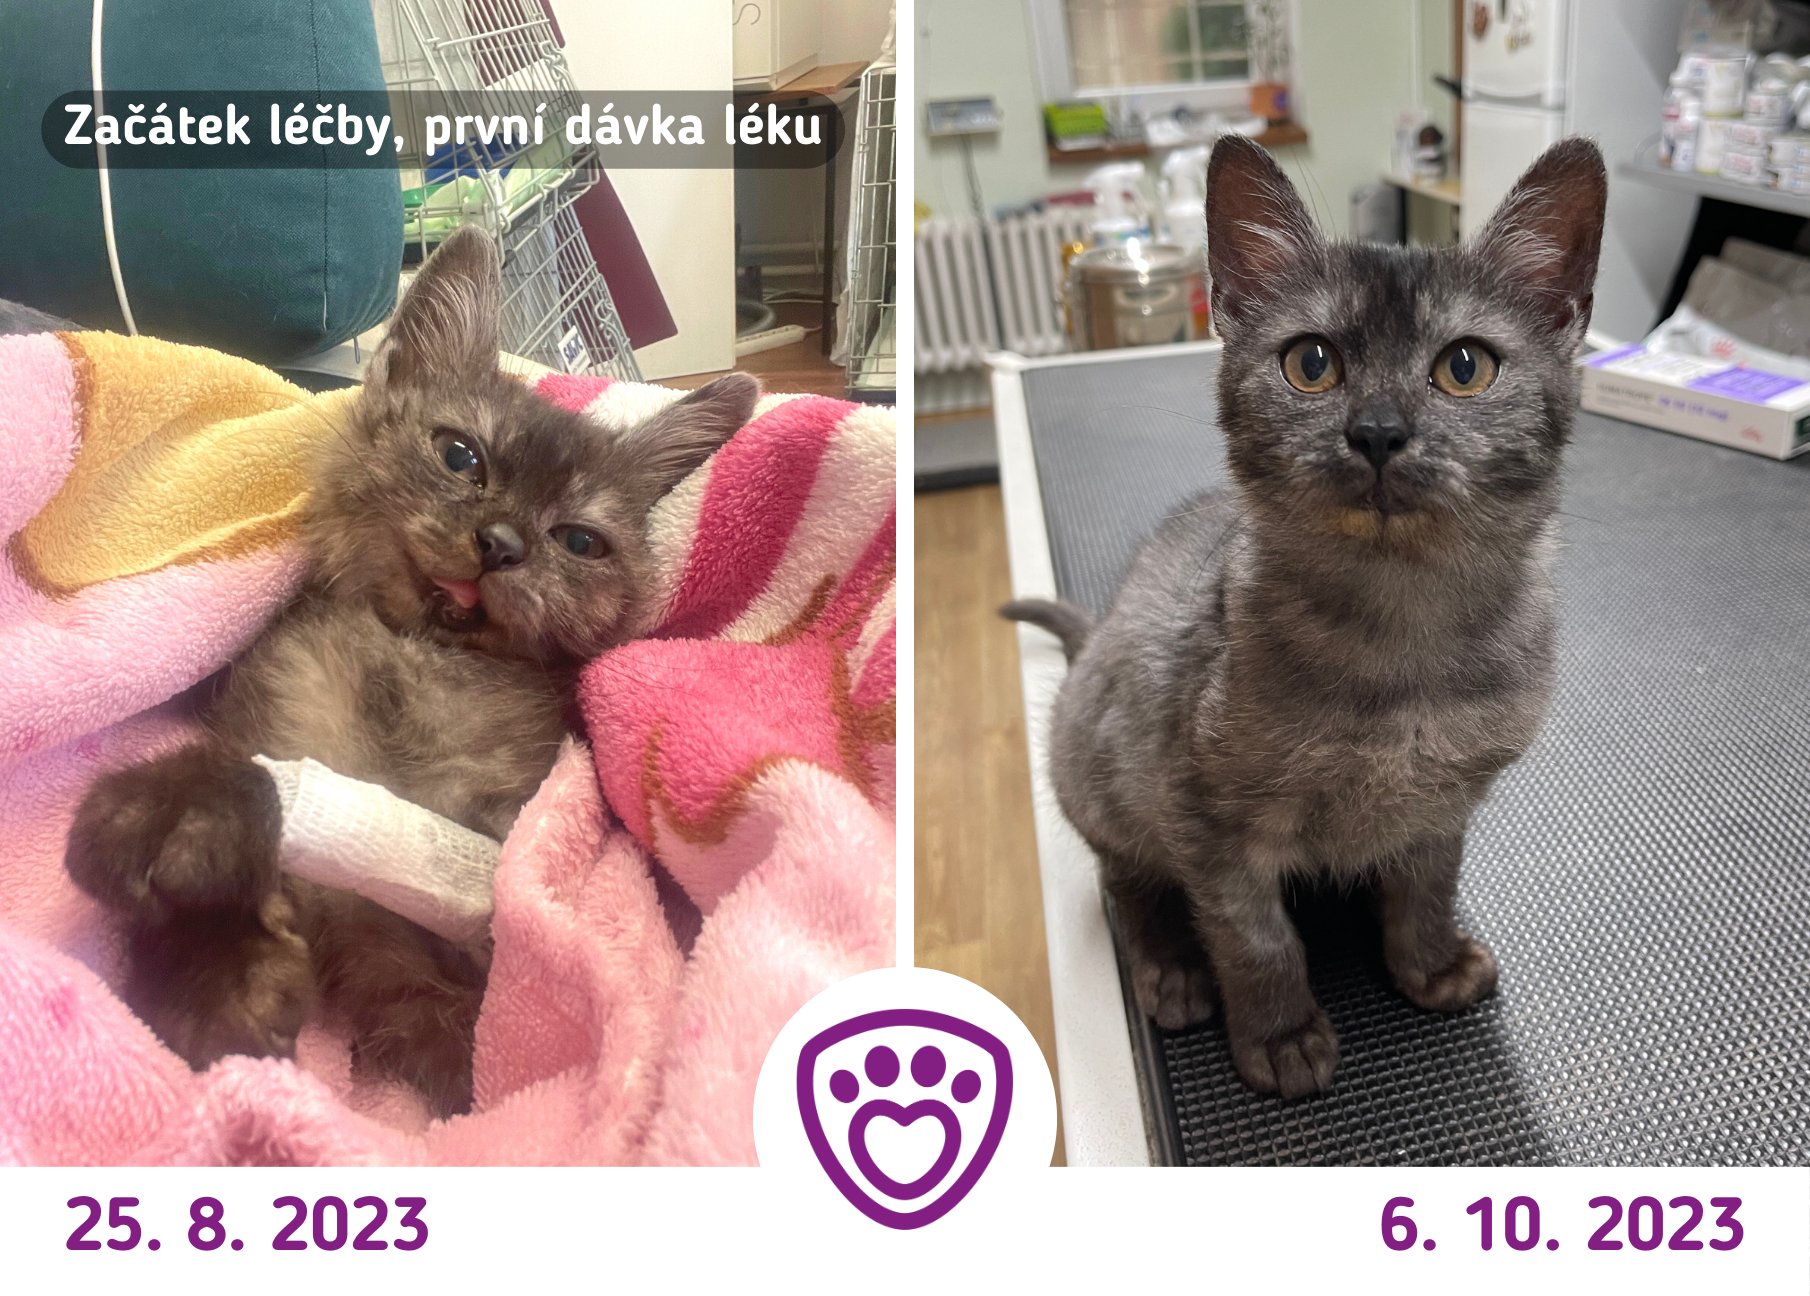 Porovnání – vlevo kocourek Ekko na veterině, když si šel pro první dávku léku na dwarfismus, vpravo Ekko při aplikaci léku na začátku října